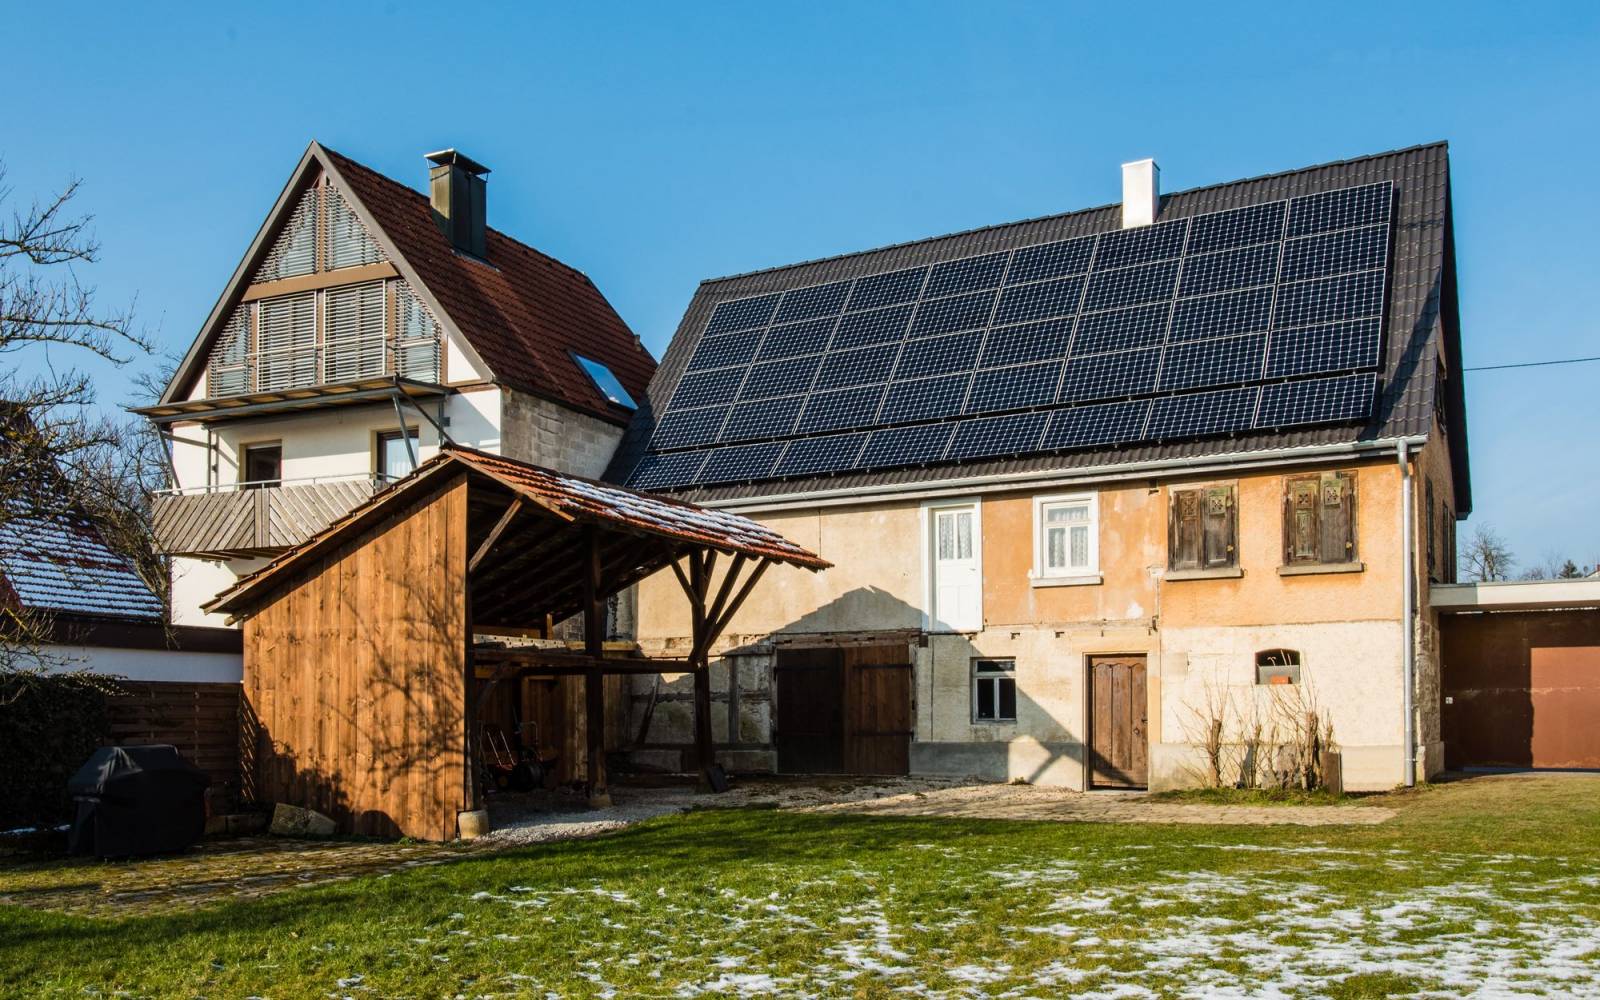 Casale con i pannelli solari sul tetto